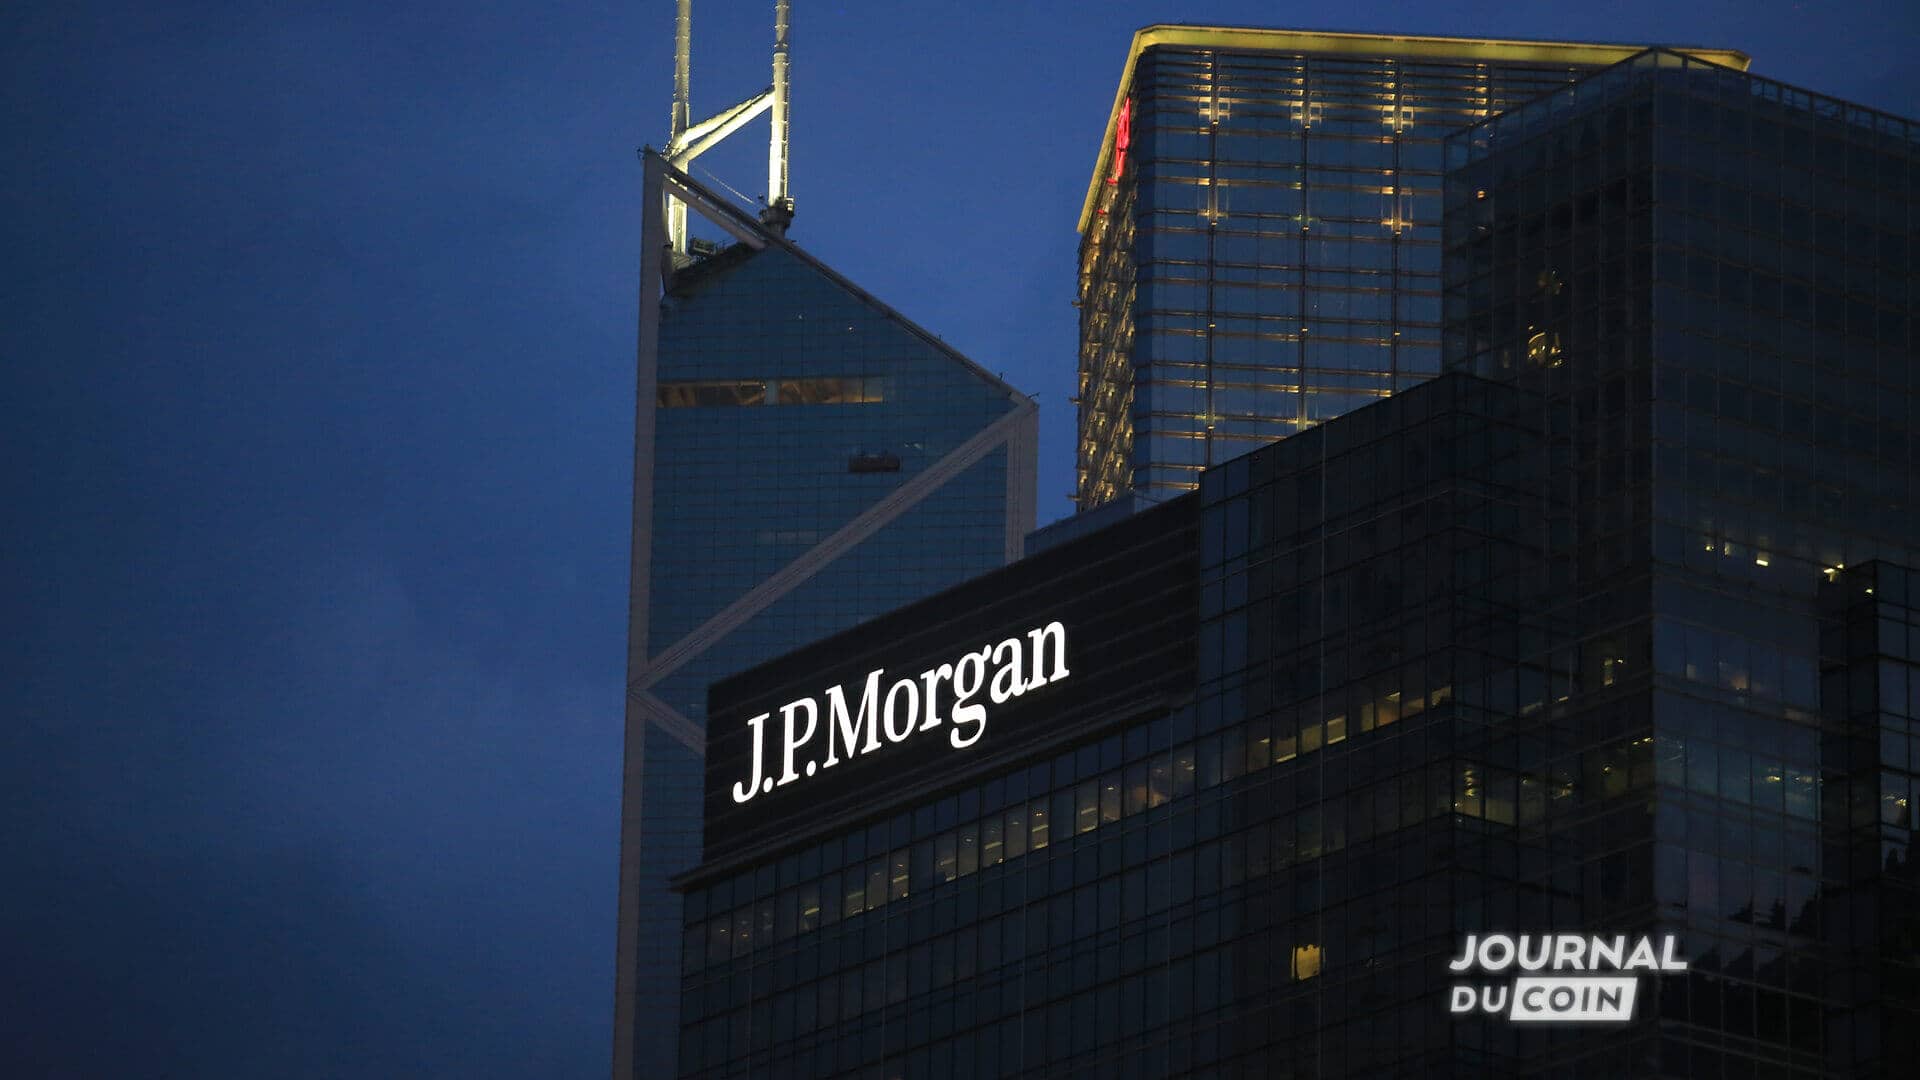 La méga banque JP Morgan, de nuit.